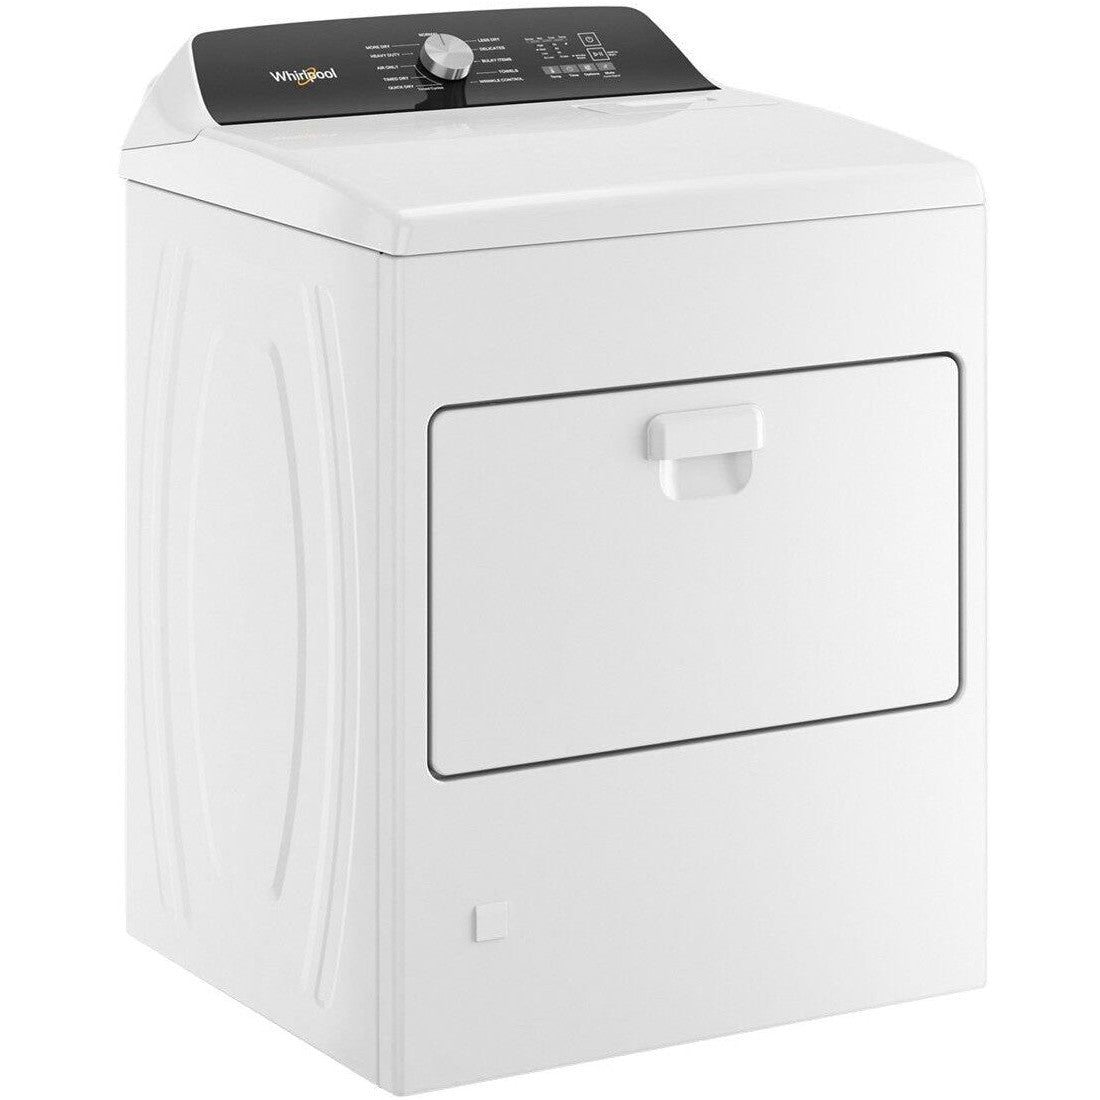 WHIRLPOOL WGD5010LW 7.0 Cu. Ft. Top Load Gas Moisture Sensing Dryer